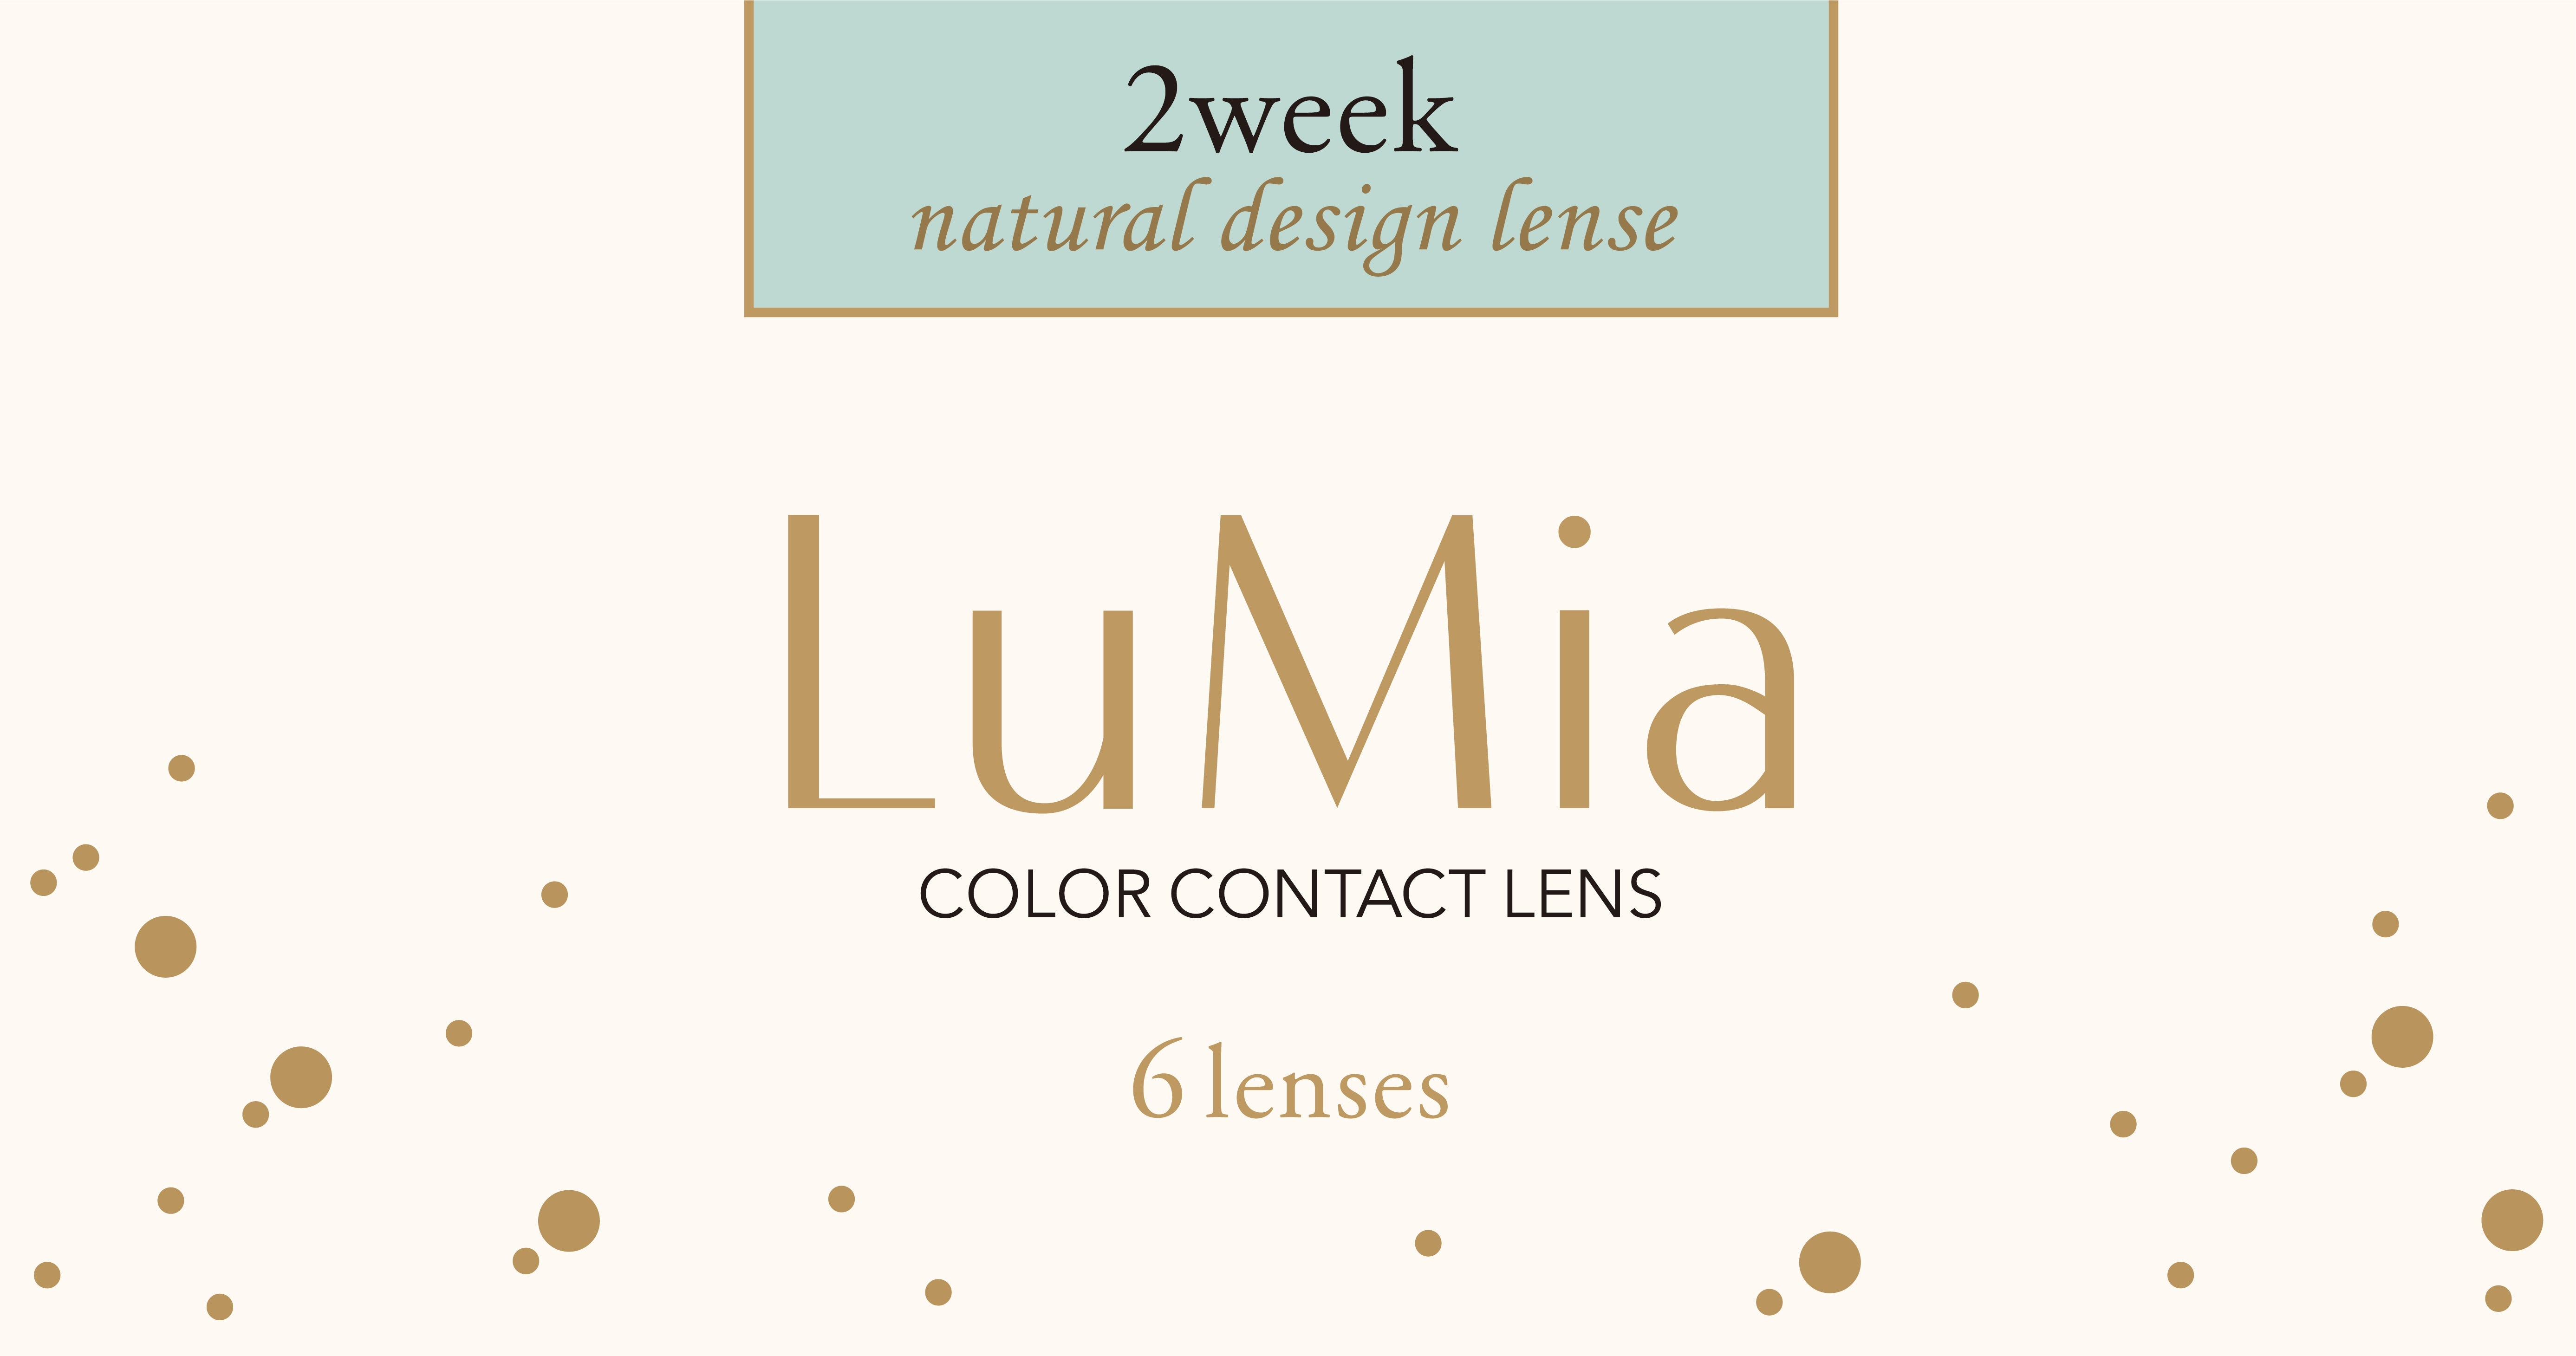 カラーコンタクトレンズ、LuMia クォーツブラウン UV | 2weekの追加の参考画像4枚目